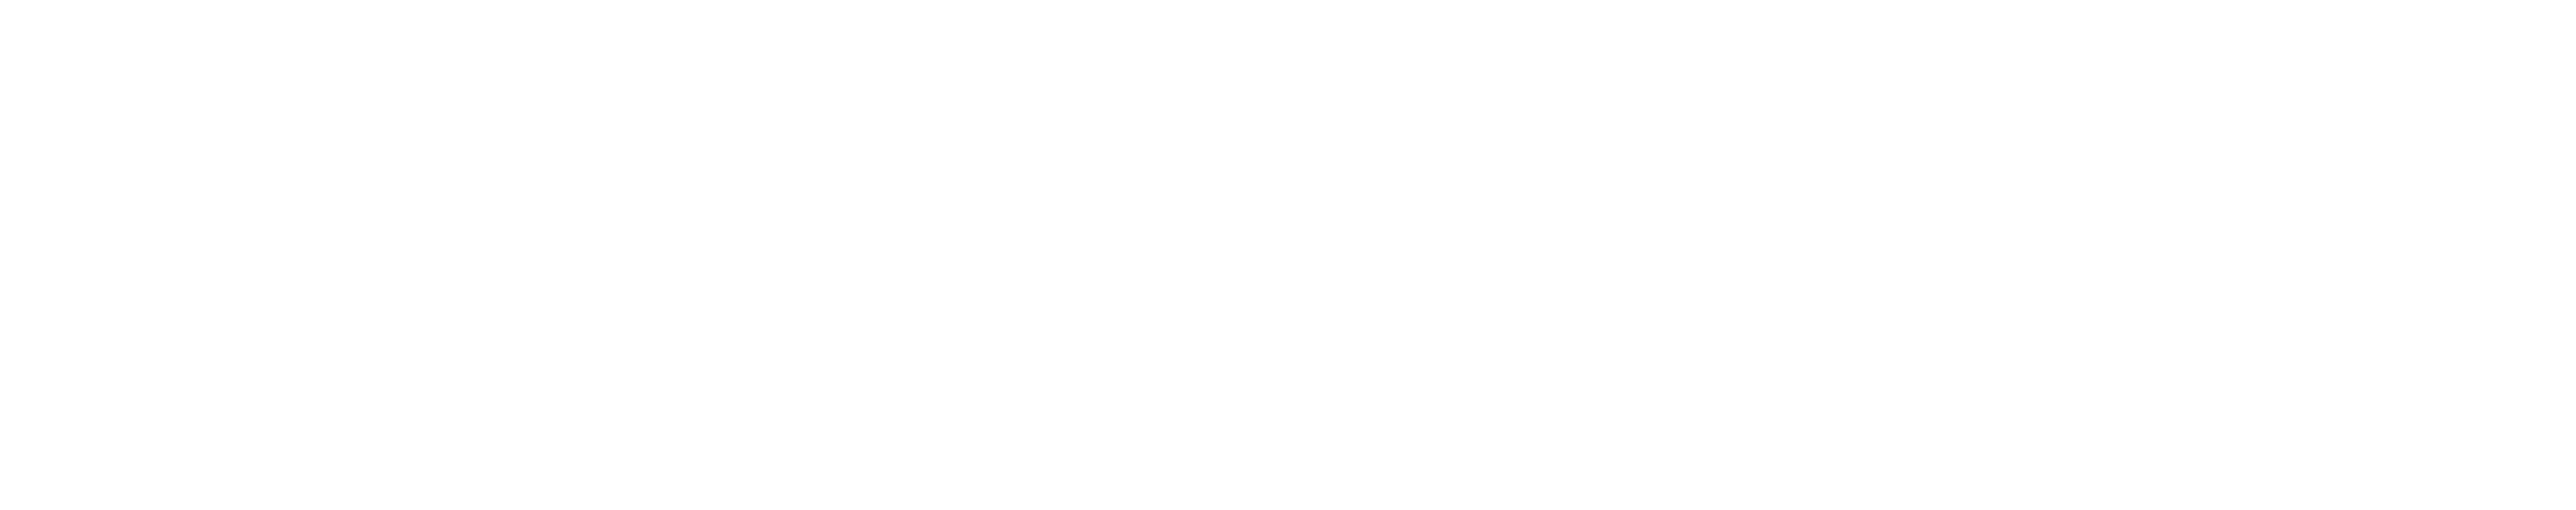 Pixxels